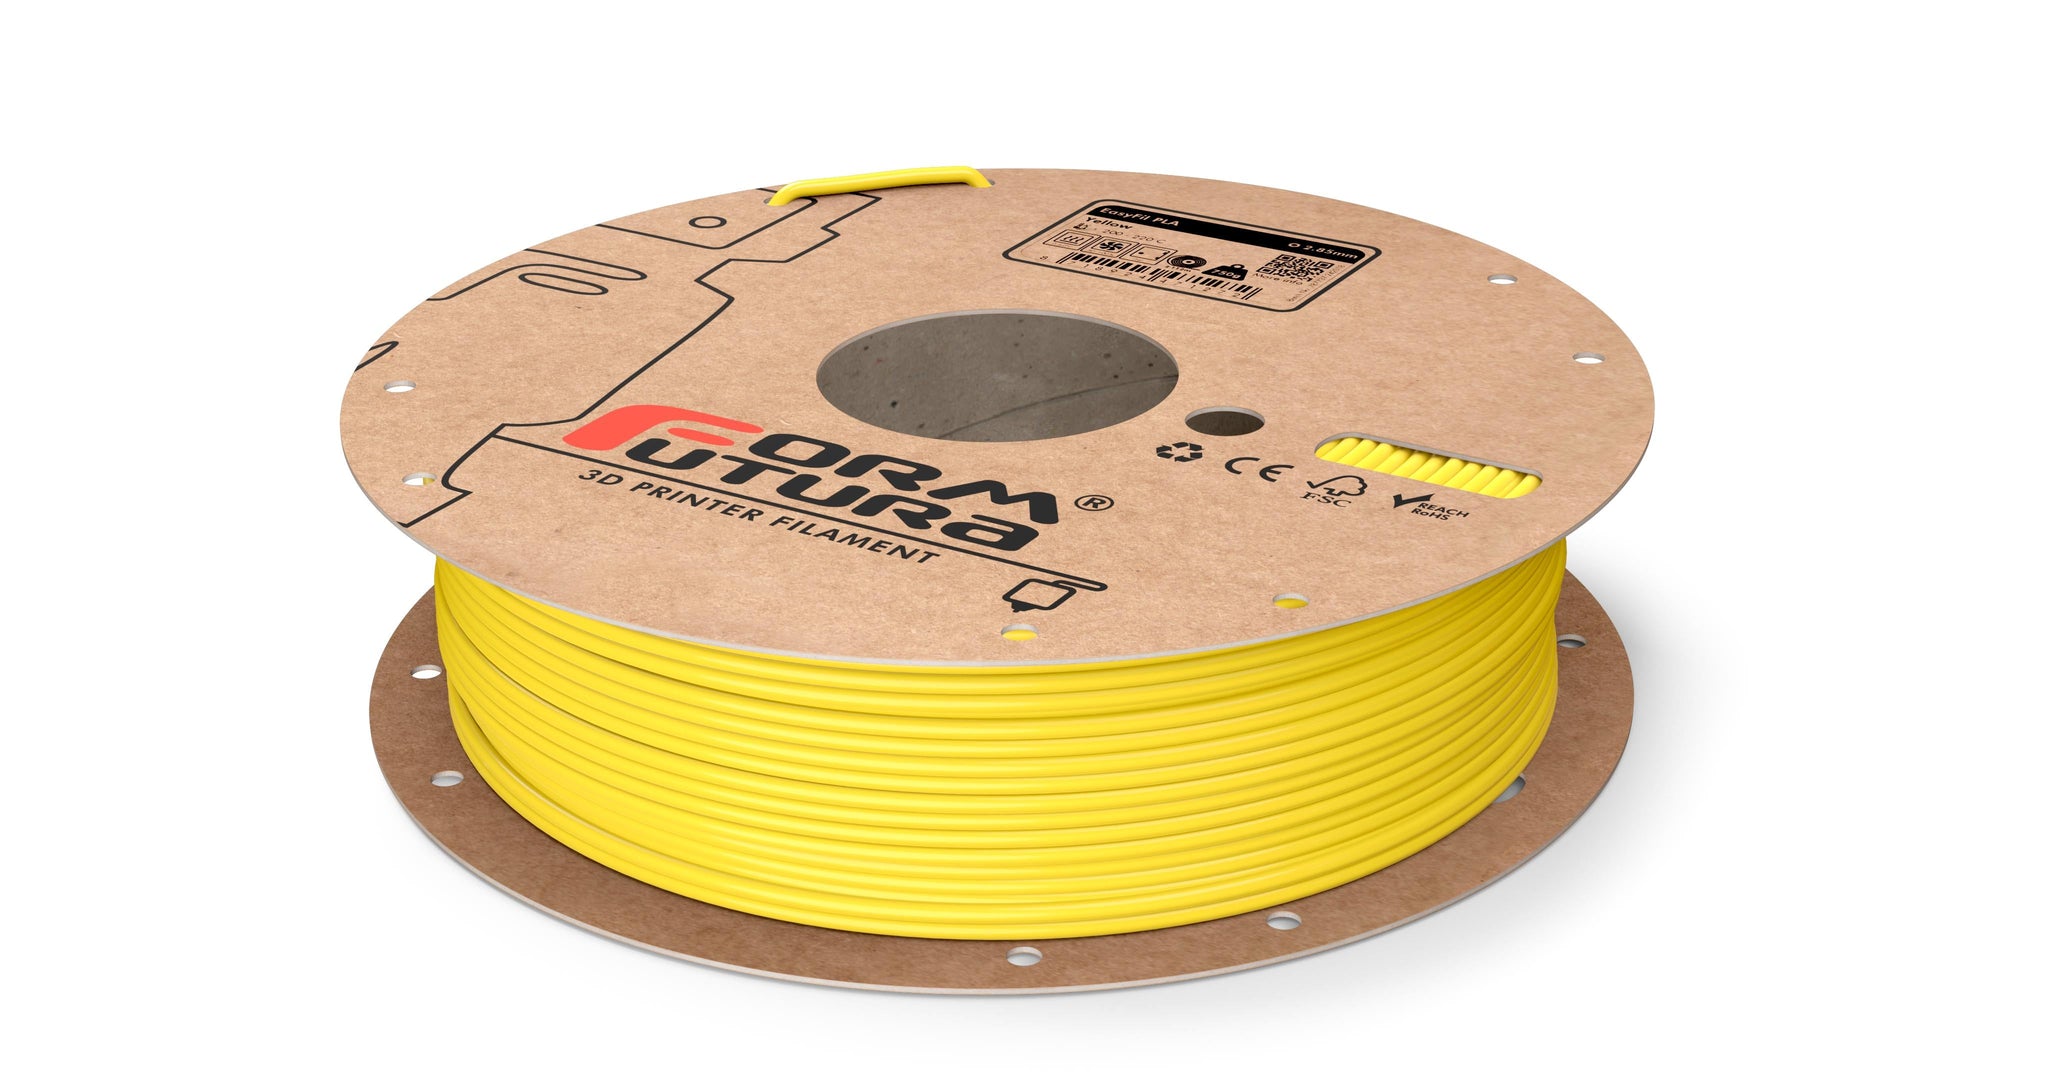 Pla Filament Easyfil 2.85Mm Yellow 750 Gram 3D Printer